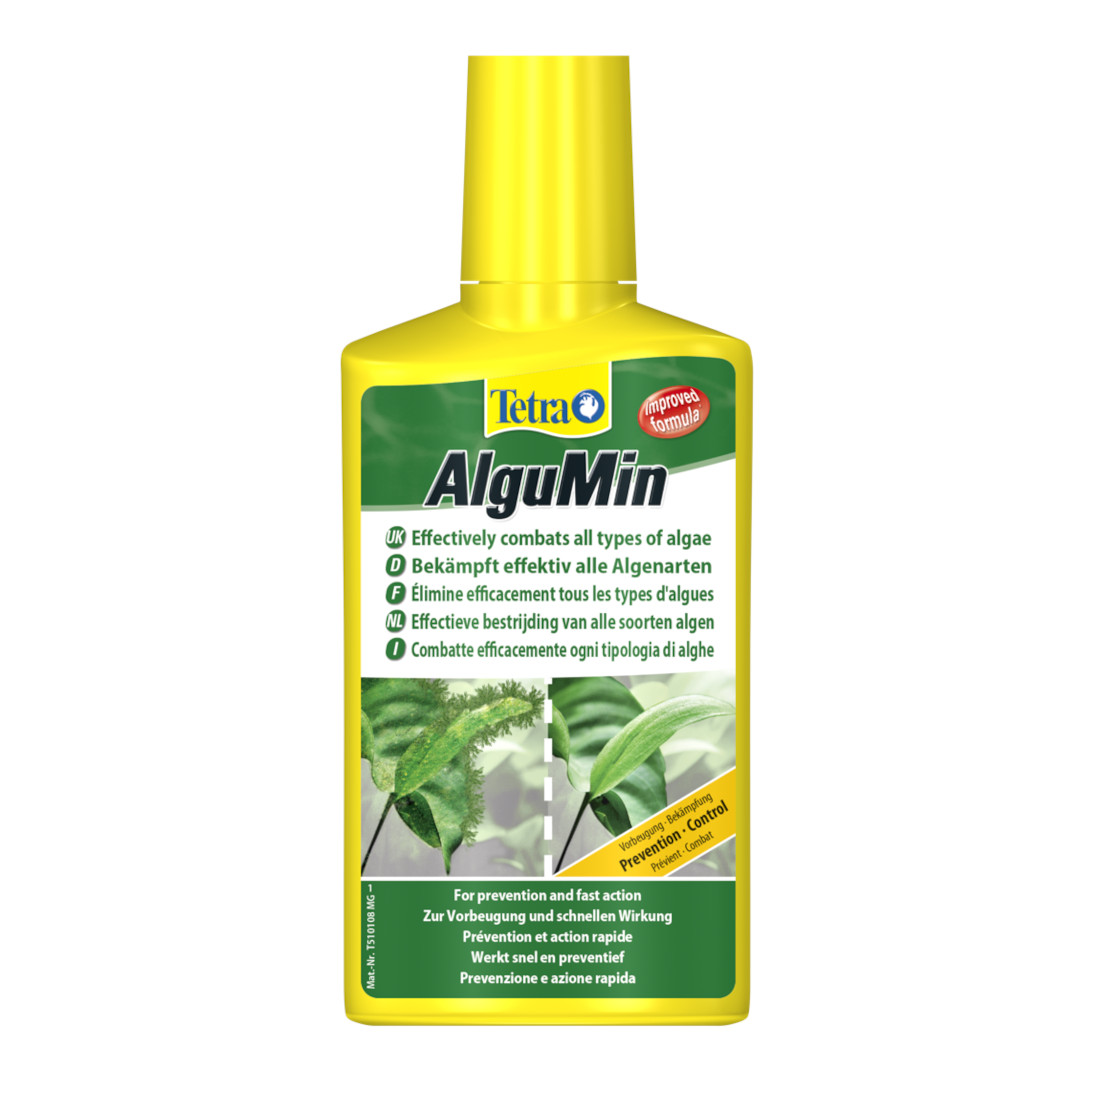 Tetra AlguMin 0,25 Liter (Algenmittel gegen alle Algenarten)